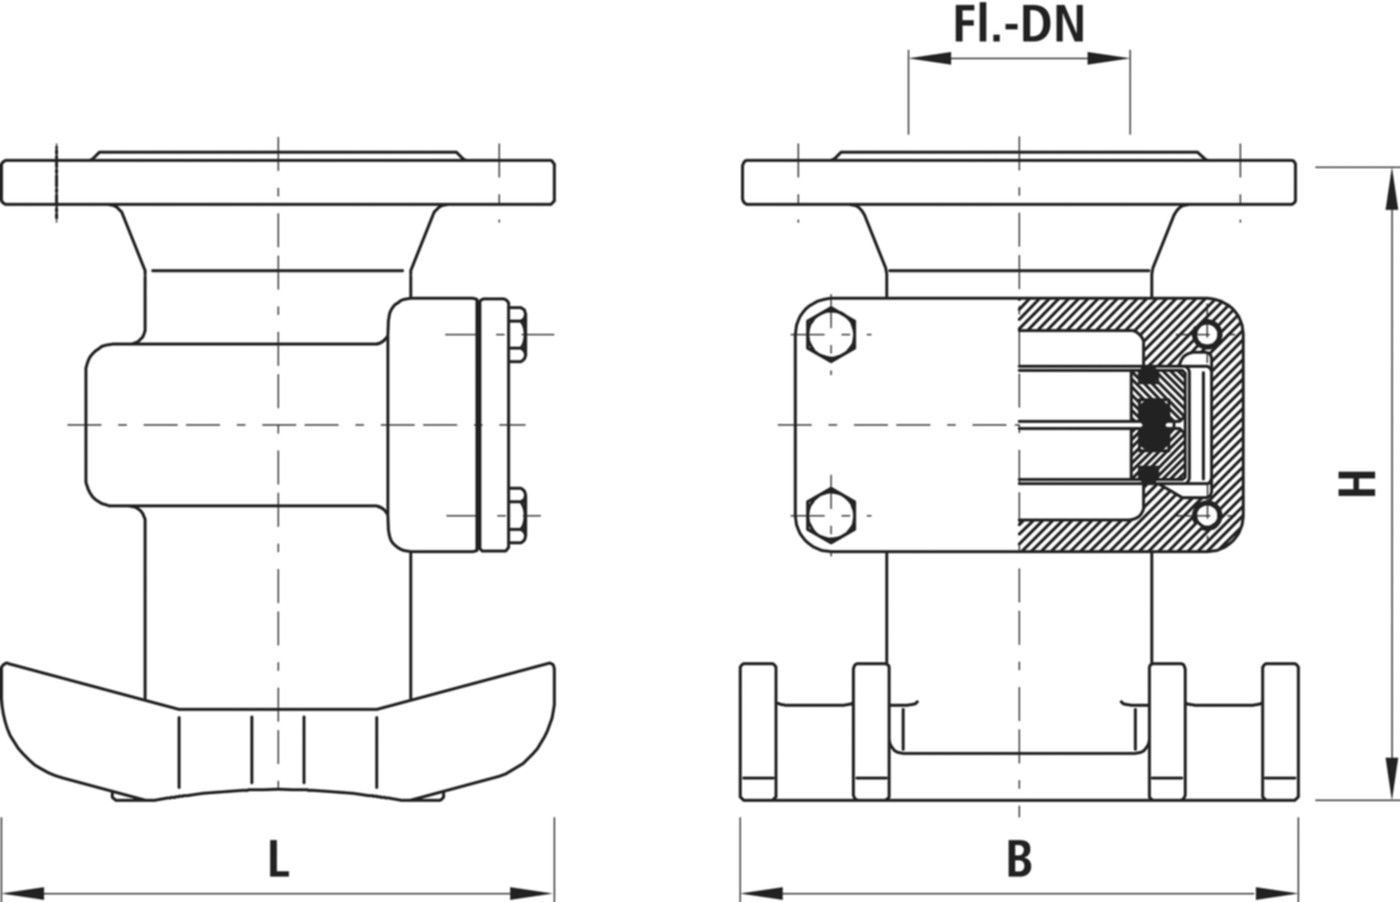 Anbohr-Sperrschelle mit Flansch 3680 DN 150-500/80 - Hawle Hausanschluss- und Anbohrarmaturen